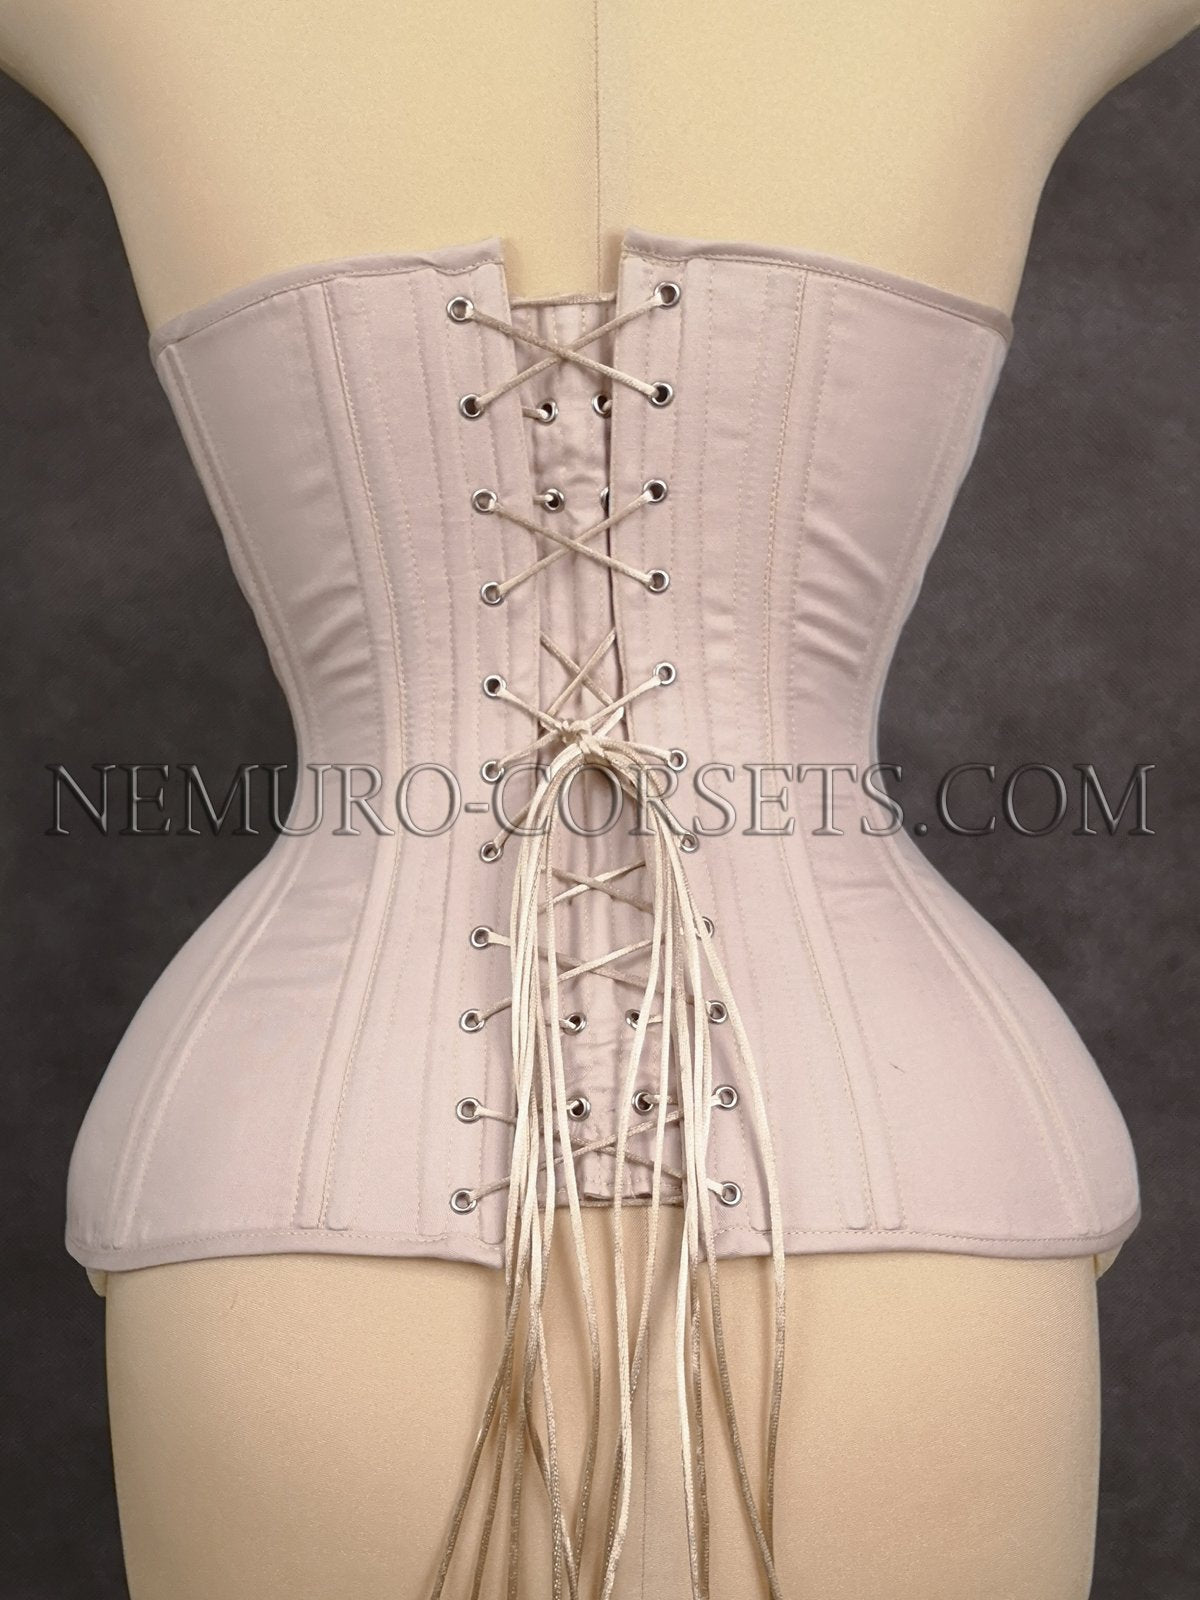 https://nemuro-corsets.com/cdn/shop/products/IMG_20190223_214842-2_1024x1024@2x.jpg?v=1610511491